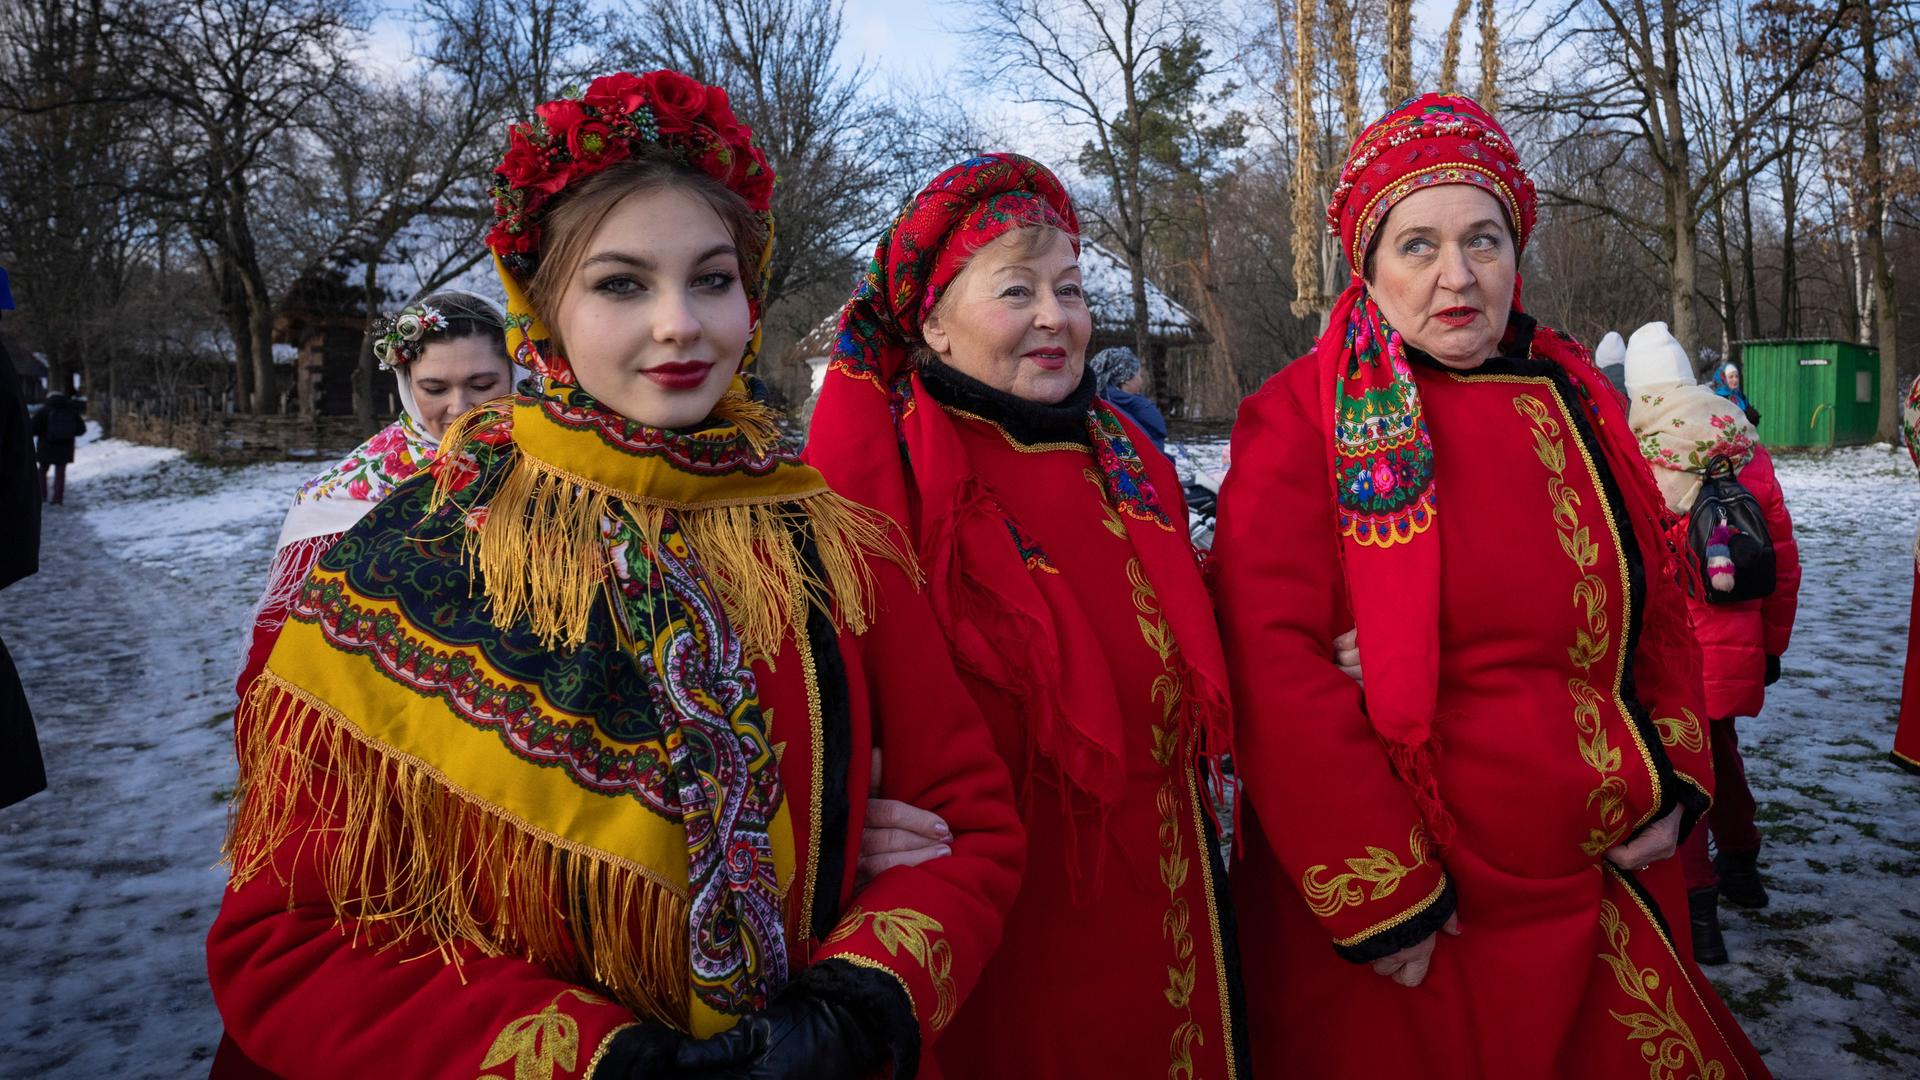 Drei Frauen in traditionellen ukrainischer Kleider mit roten langen Mänteln, die reicht veriehrt sind, gehen über eine schneebedeckte Straße. Szene aus dem Dorf Pirogovo in der Nähe der Hauptstadt Kiew. Aufnahme vom 25.12.2023